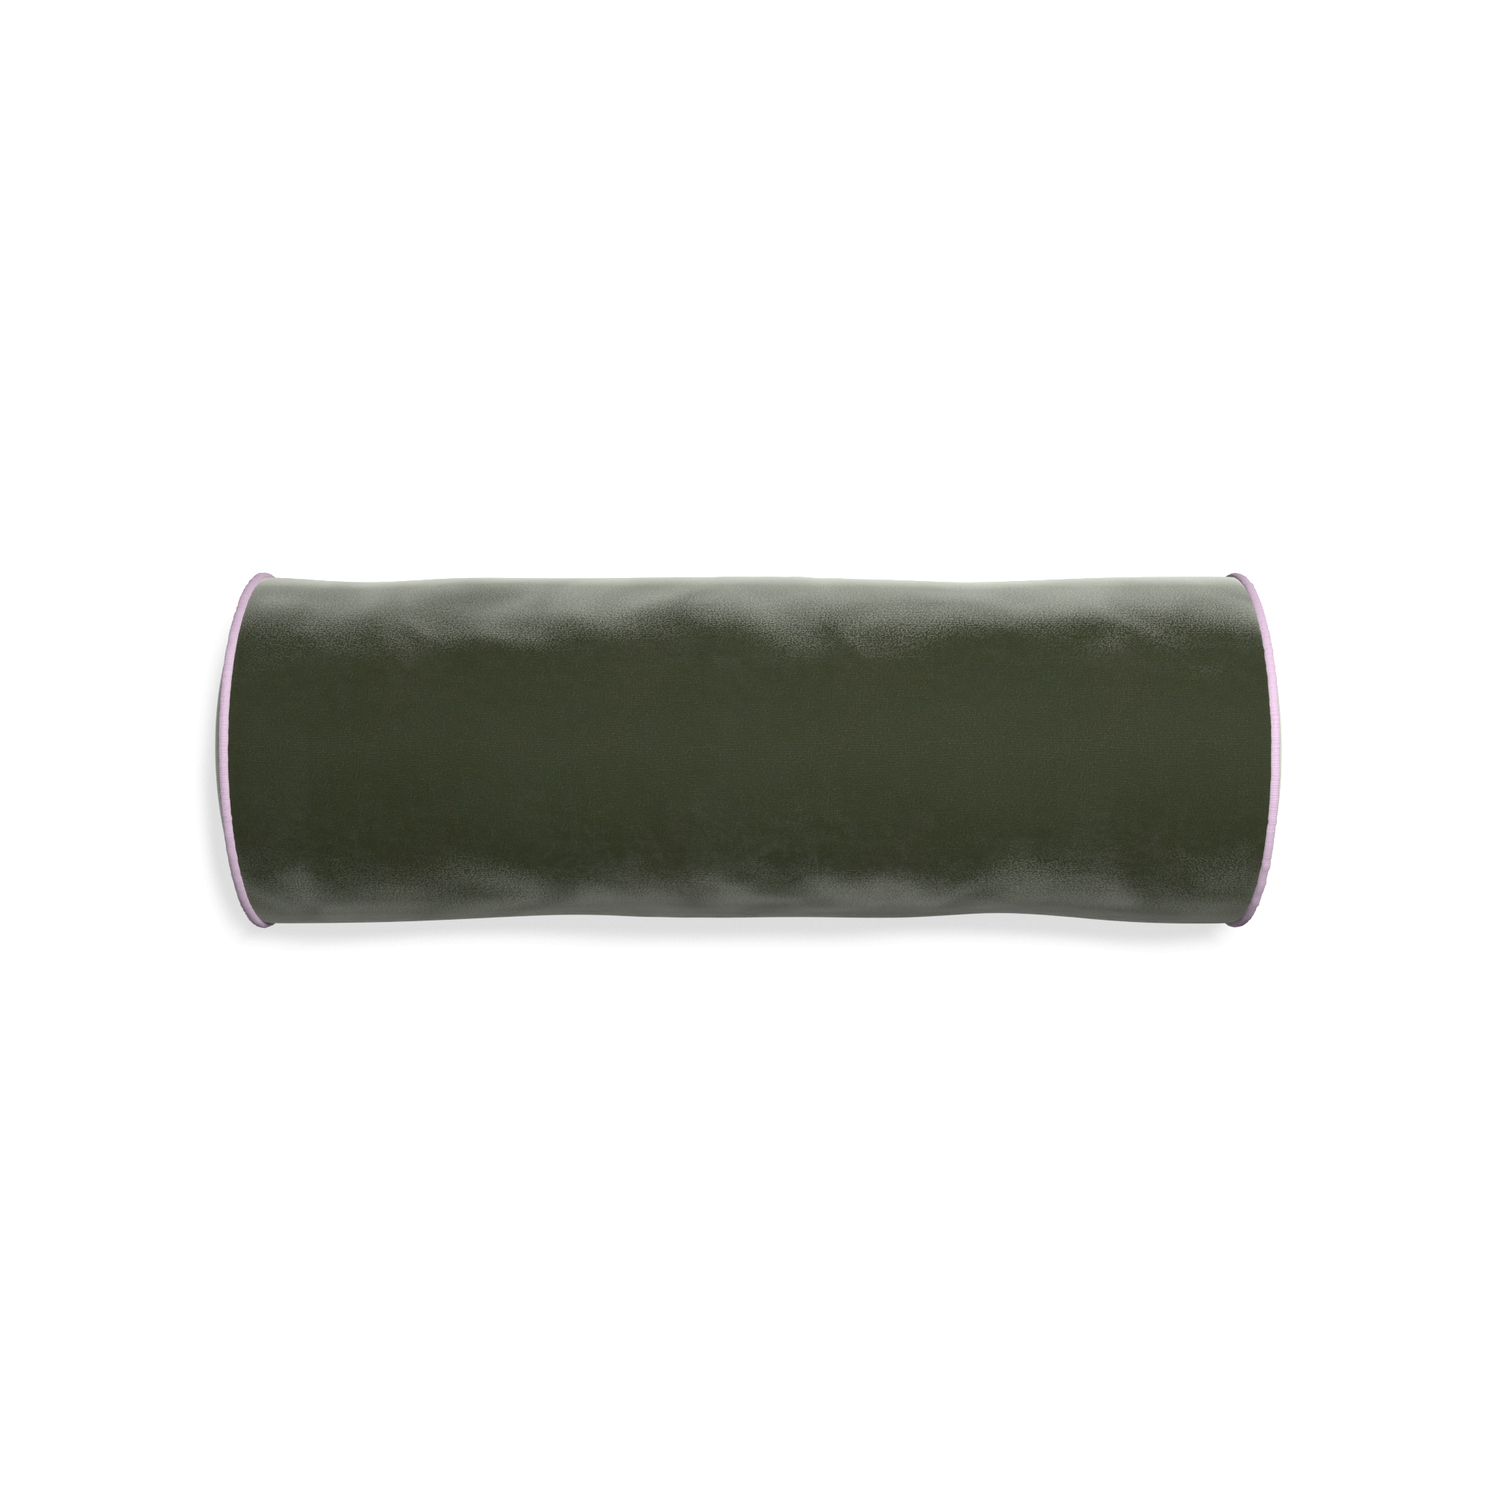 Bolster fern velvet custom pillow with l piping on white background